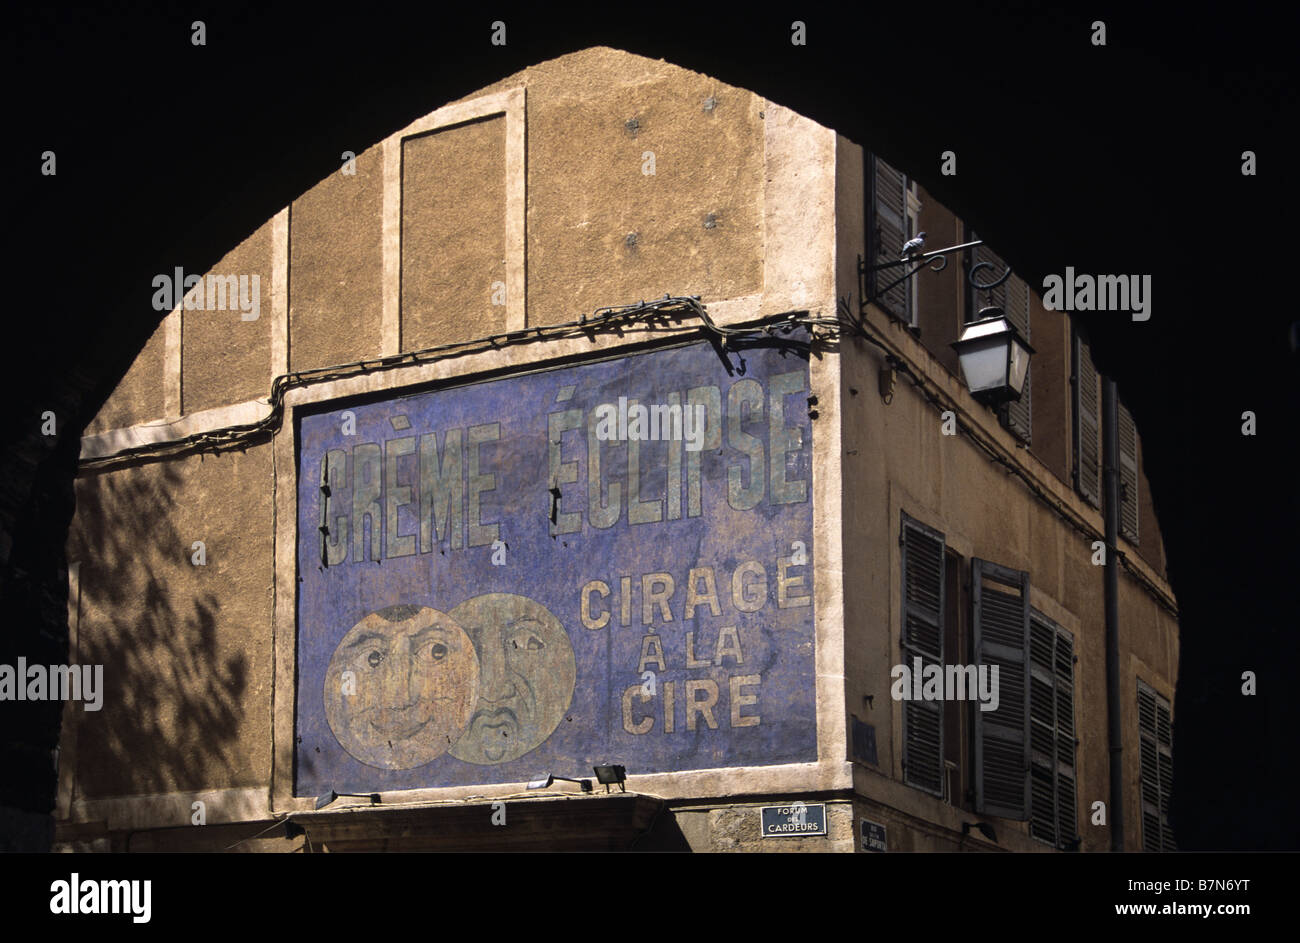 Alte bemalte Wand Werbung für Wachs Politur, Creme Eclipse & Clock Tower Gateway, Aix-en-Provence, Frankreich Stockfoto